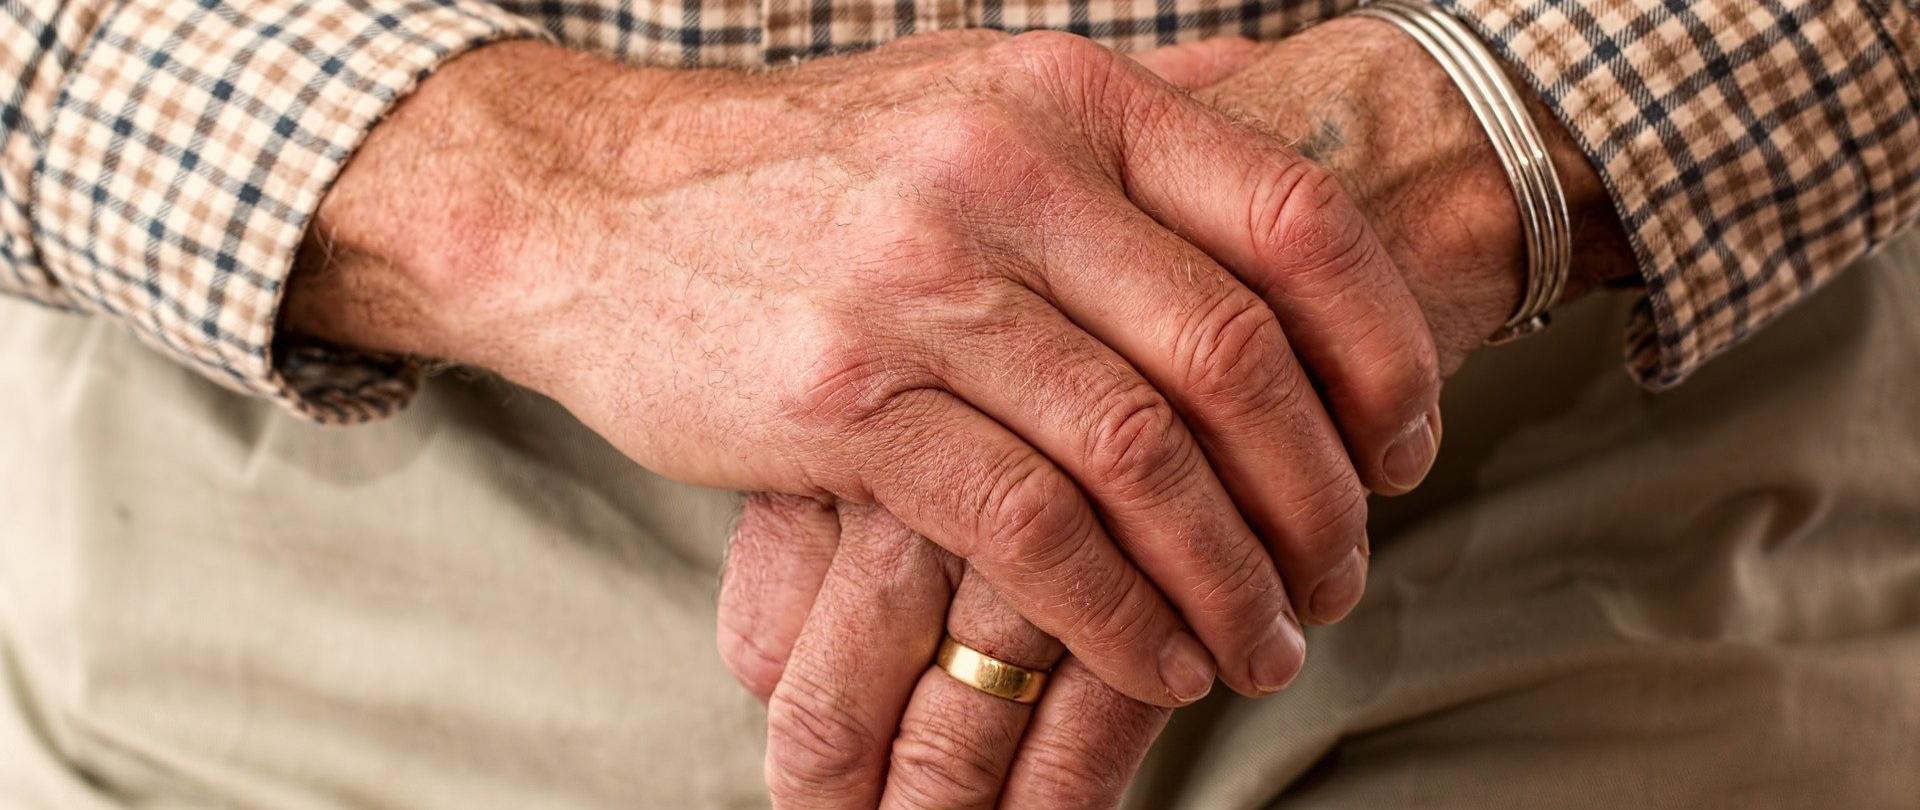 Zdjęcie, na którym widać dłonie starszego mężczyzny trzymającego laskę do podparcia się. Na dłoni mężczyzny widoczna szeroka, złota obrączka. 